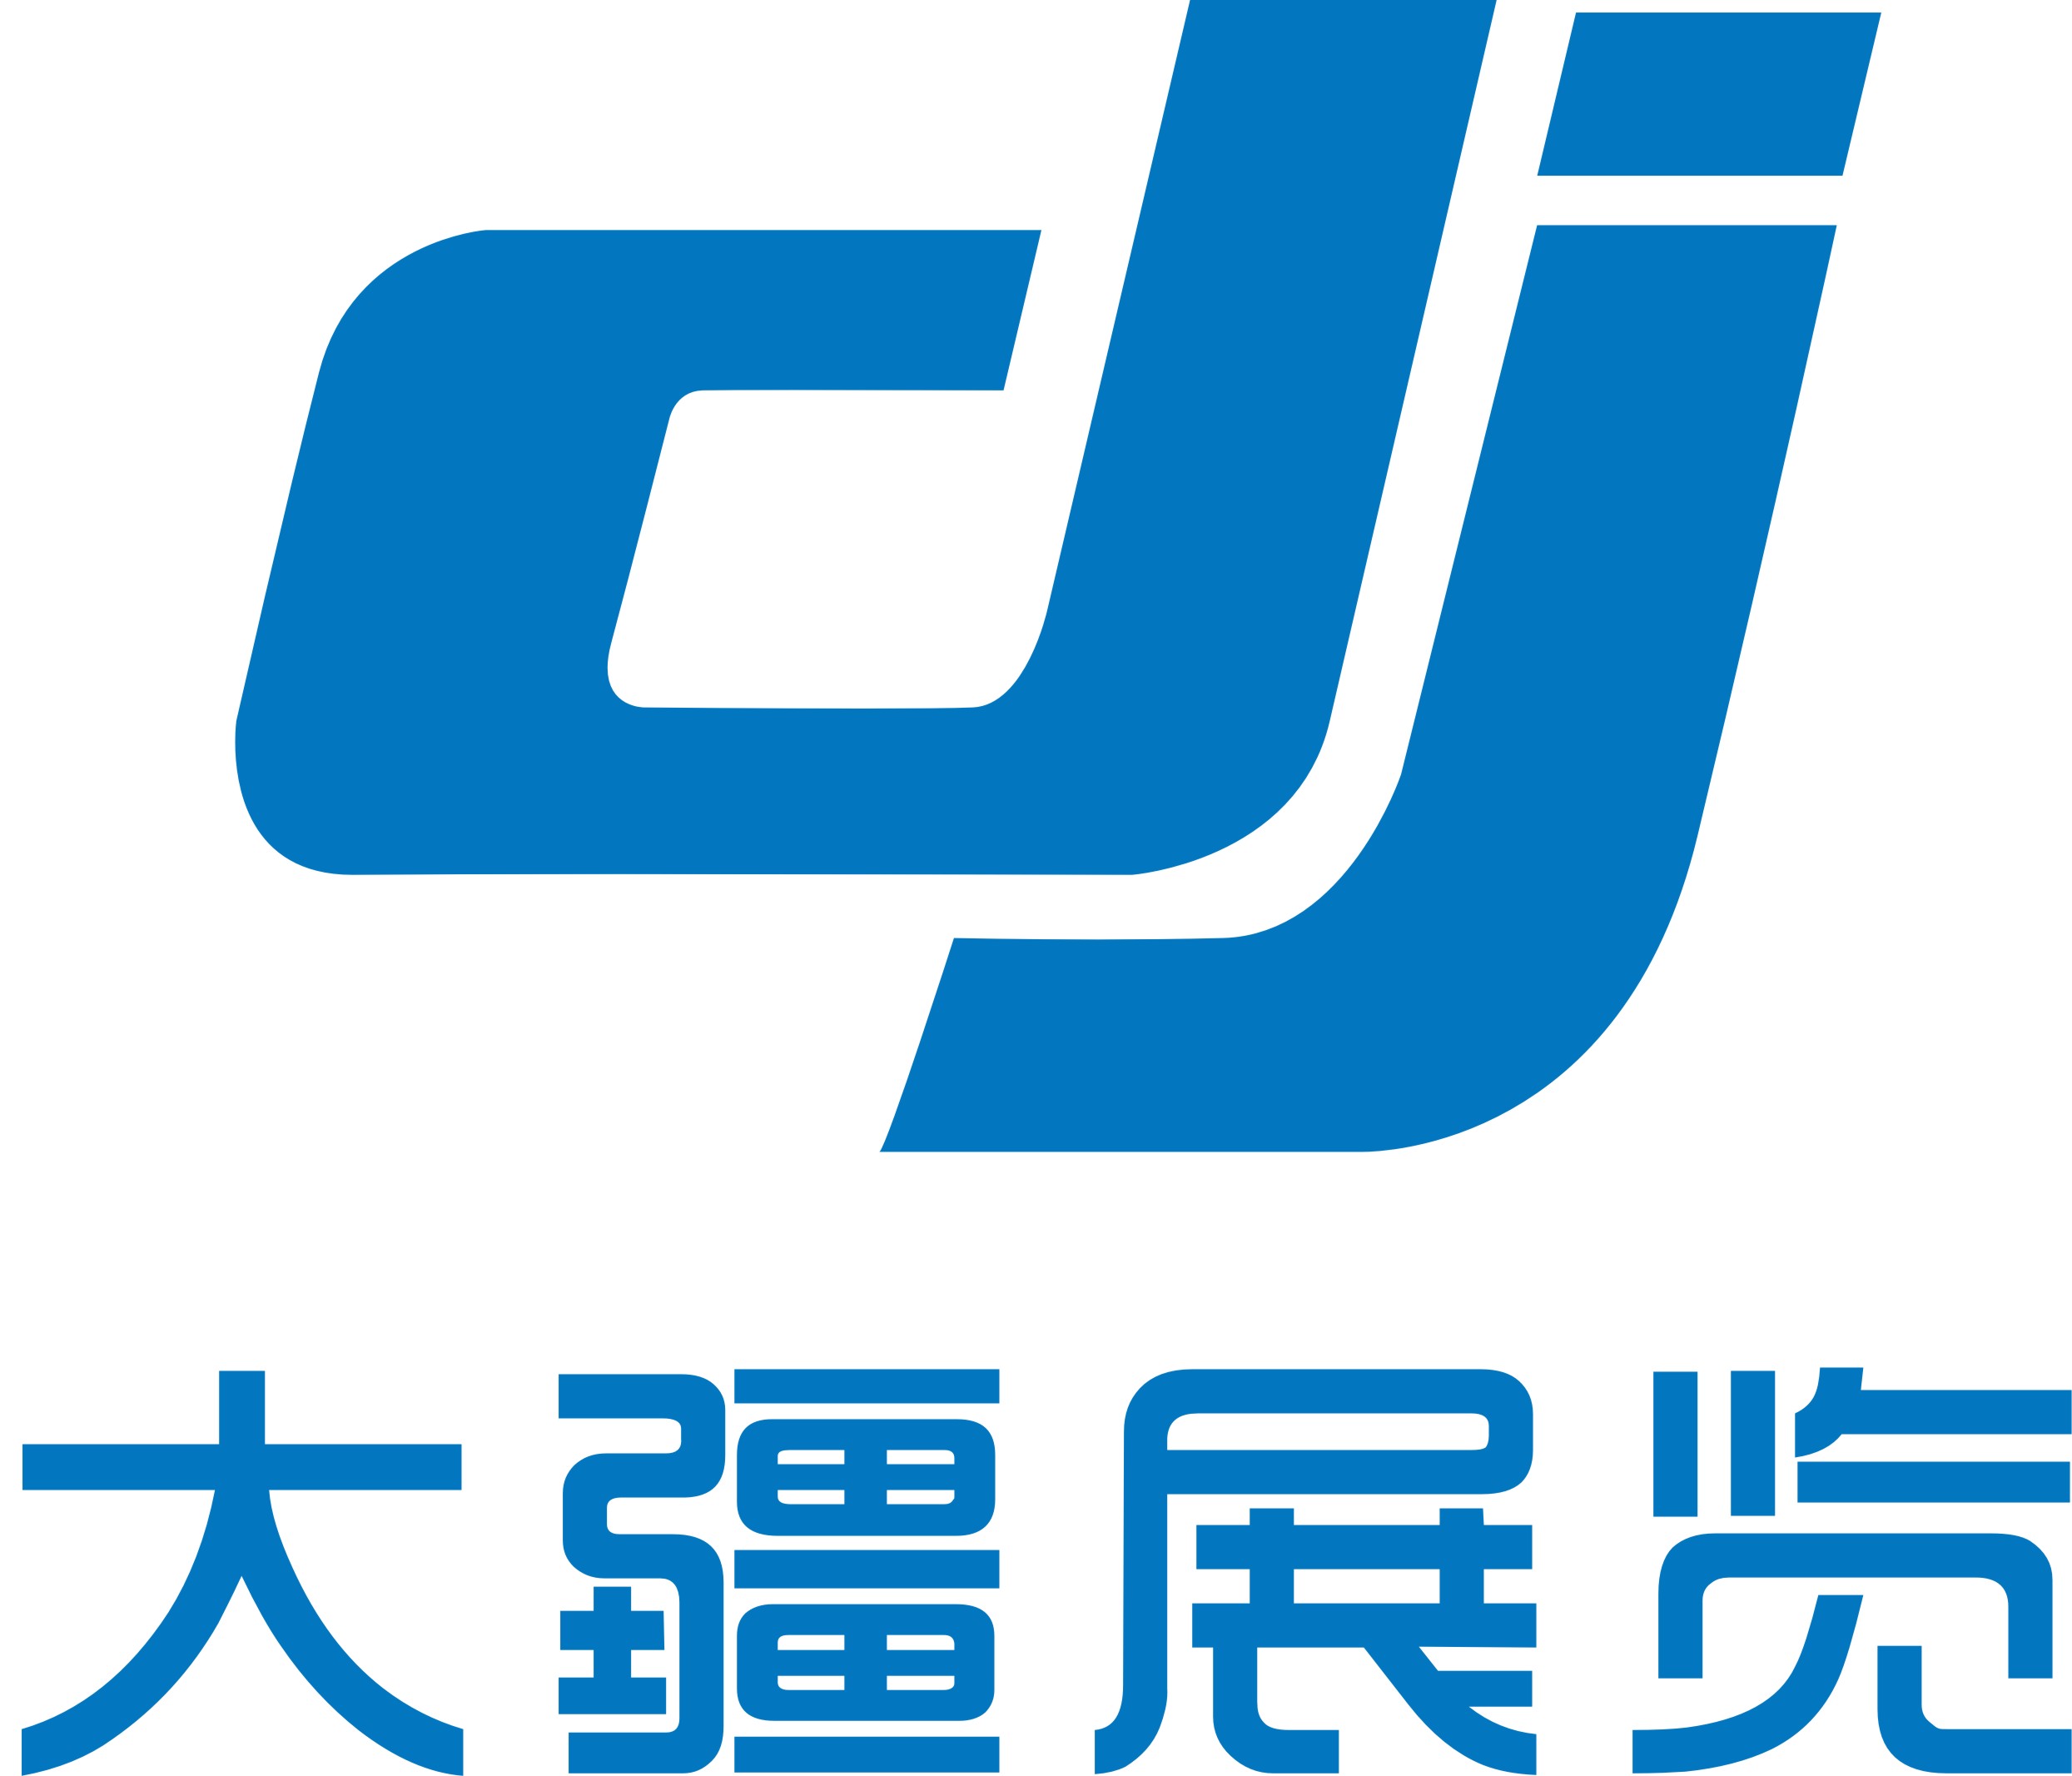 大疆logo 品牌形象图片